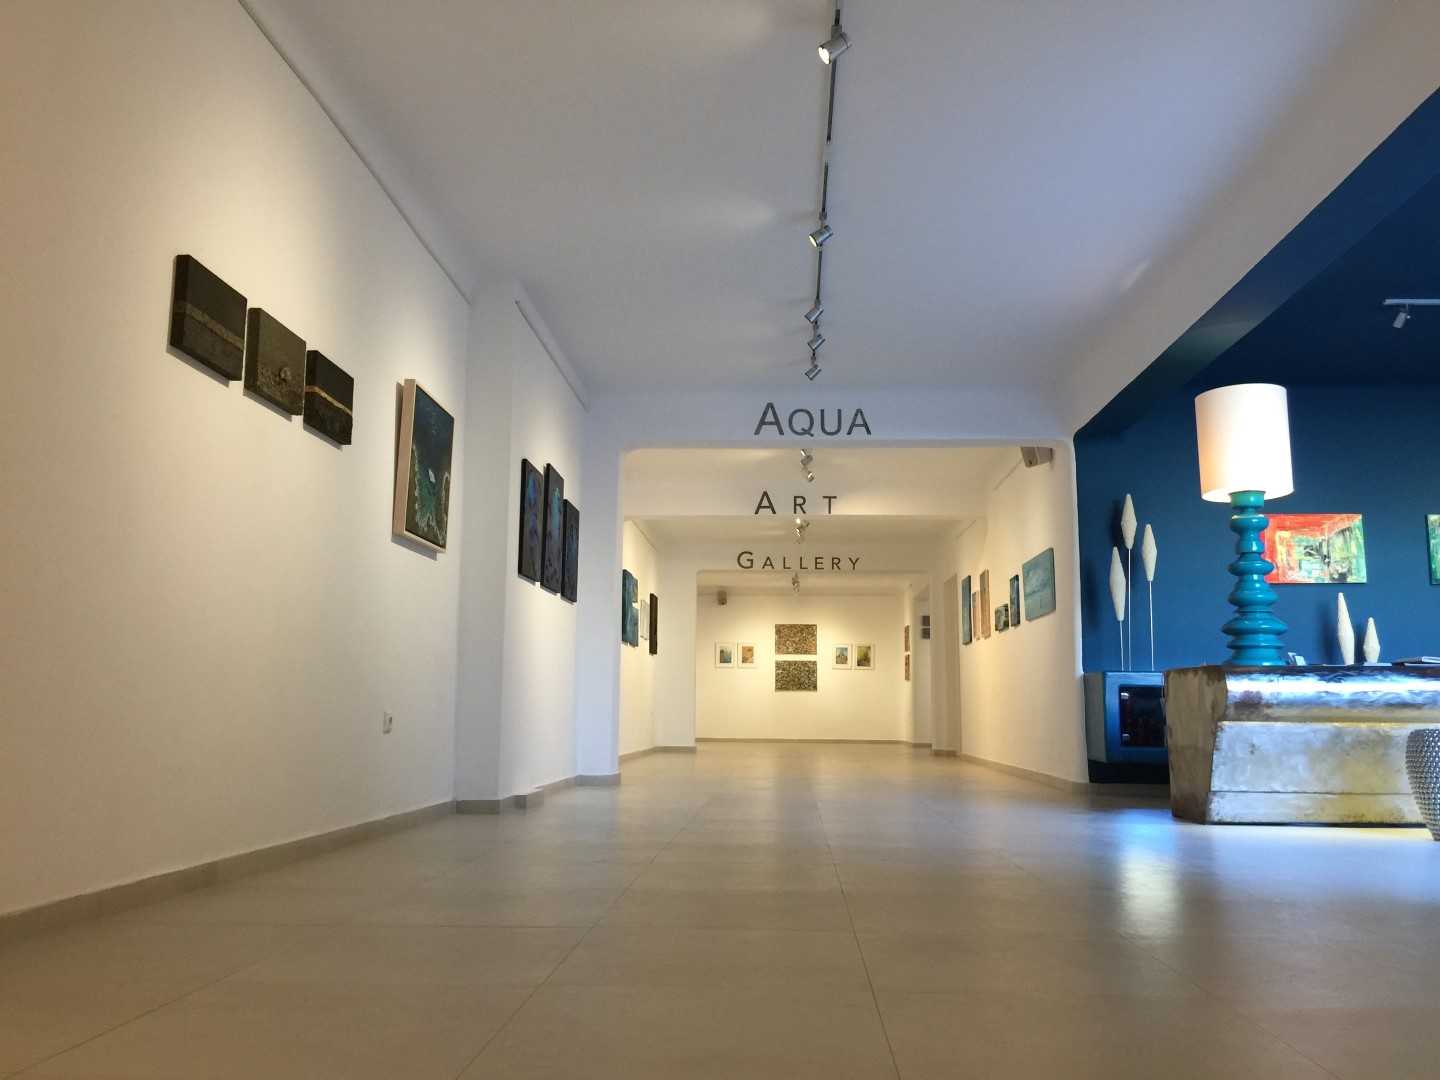 Η δημοφιλής εικαστική πλατφόρμα #Rest@rt Contemporary Art Platform, συνεχίζει τις δράσεις της στα νησιά και παρουσιάζει το Σάββατο 15 Ιουλίου στην Aqua Gallery στον Πύργο Σαντορίνης την ομαδική εικαστική έκθεση «Η Τέχνη ταξιδεύει…».